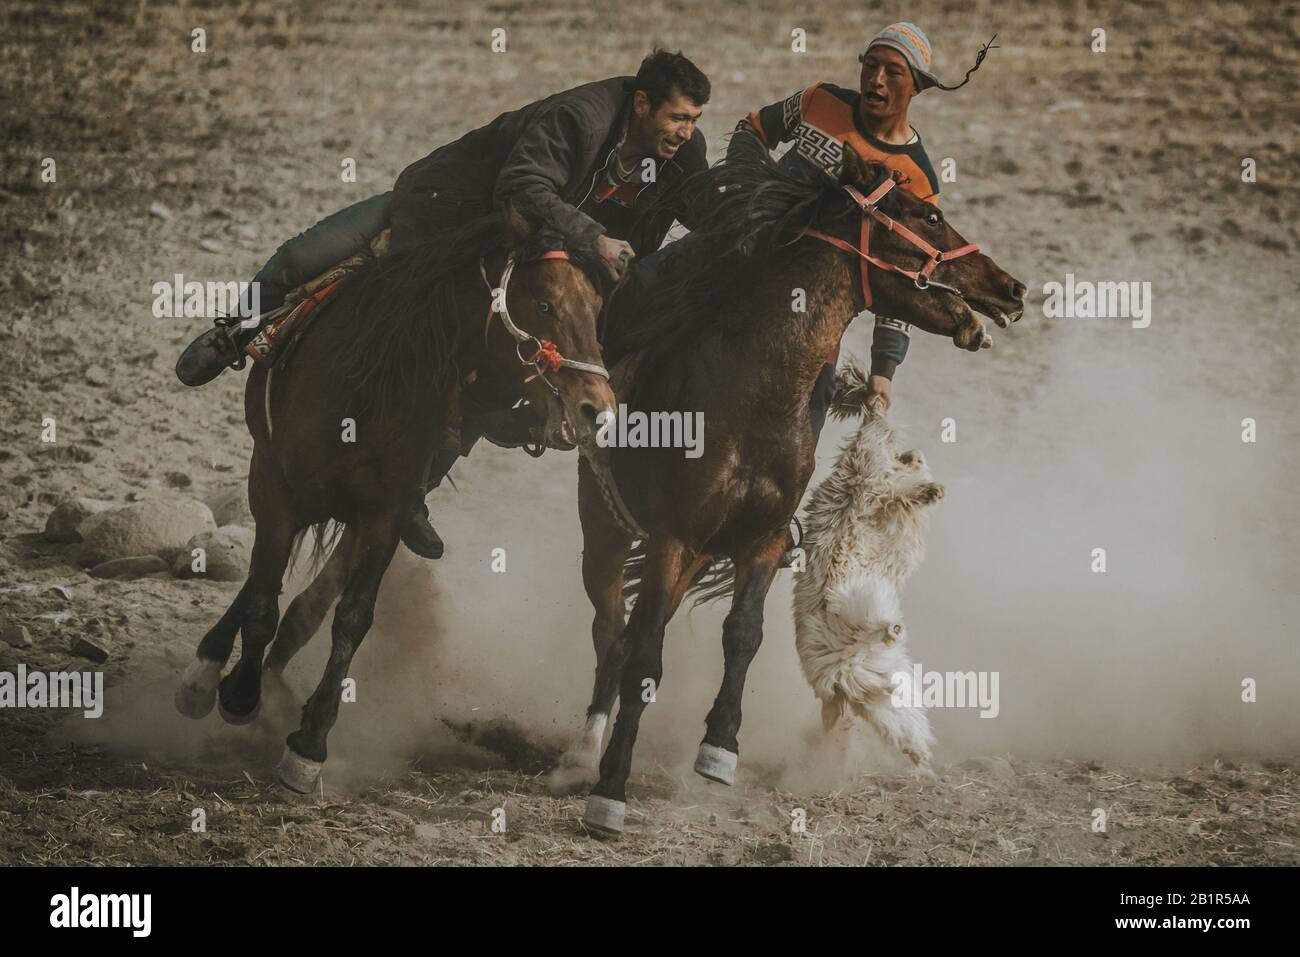 Tashkurgan, Chine - septembre 2019: Deux joueurs de Buzkashi au Tadjikistan pendant le sport traditionnel d'Asie centrale, équitation chevaux et essayer de place Banque D'Images